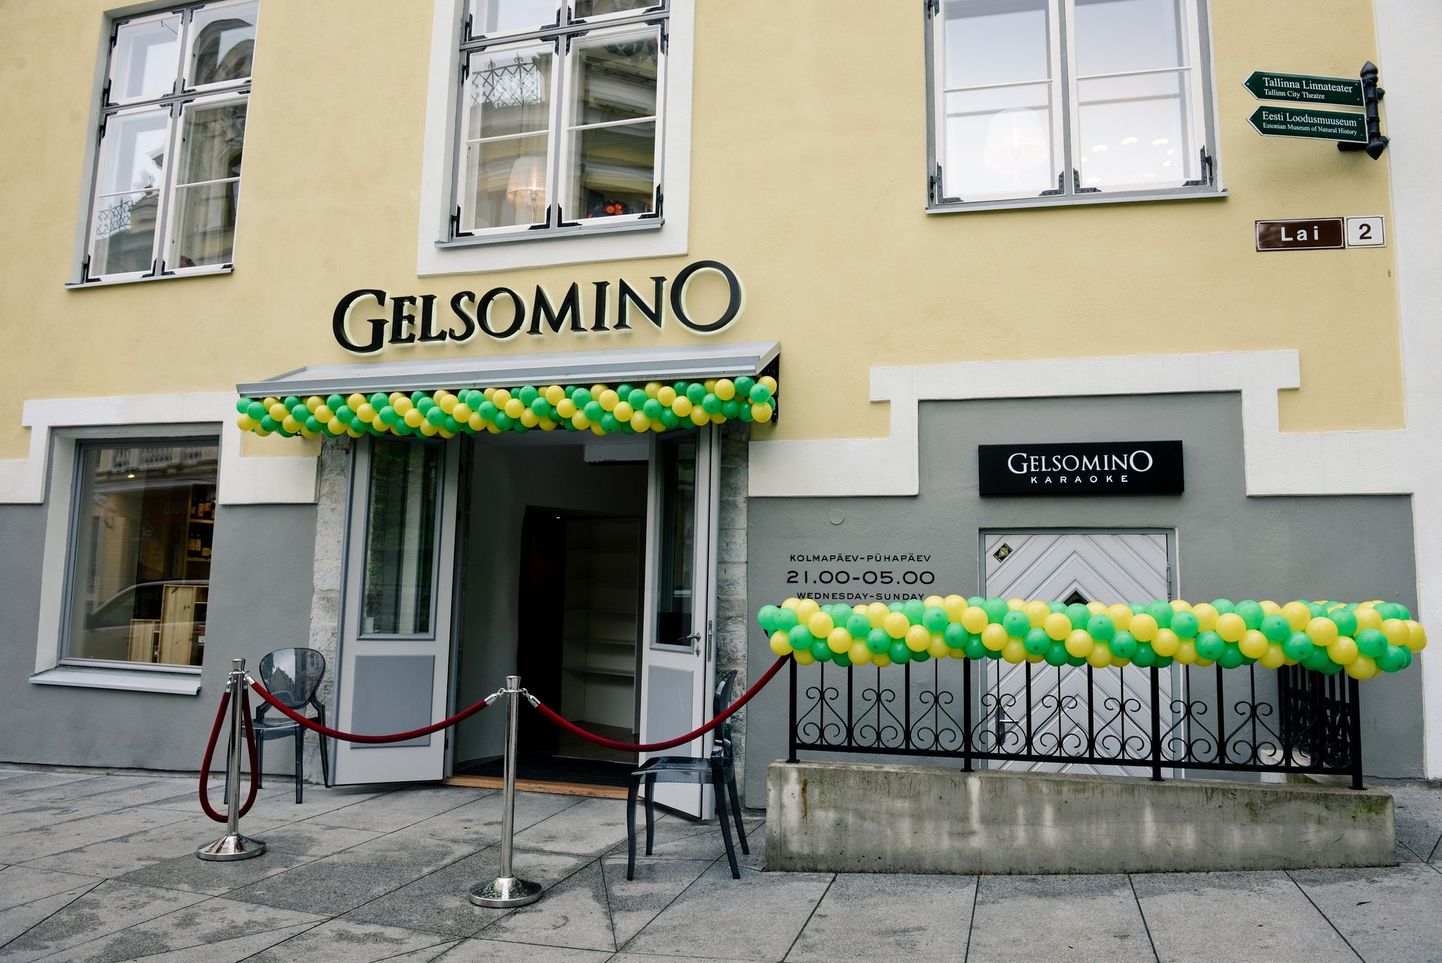 Gelsomino